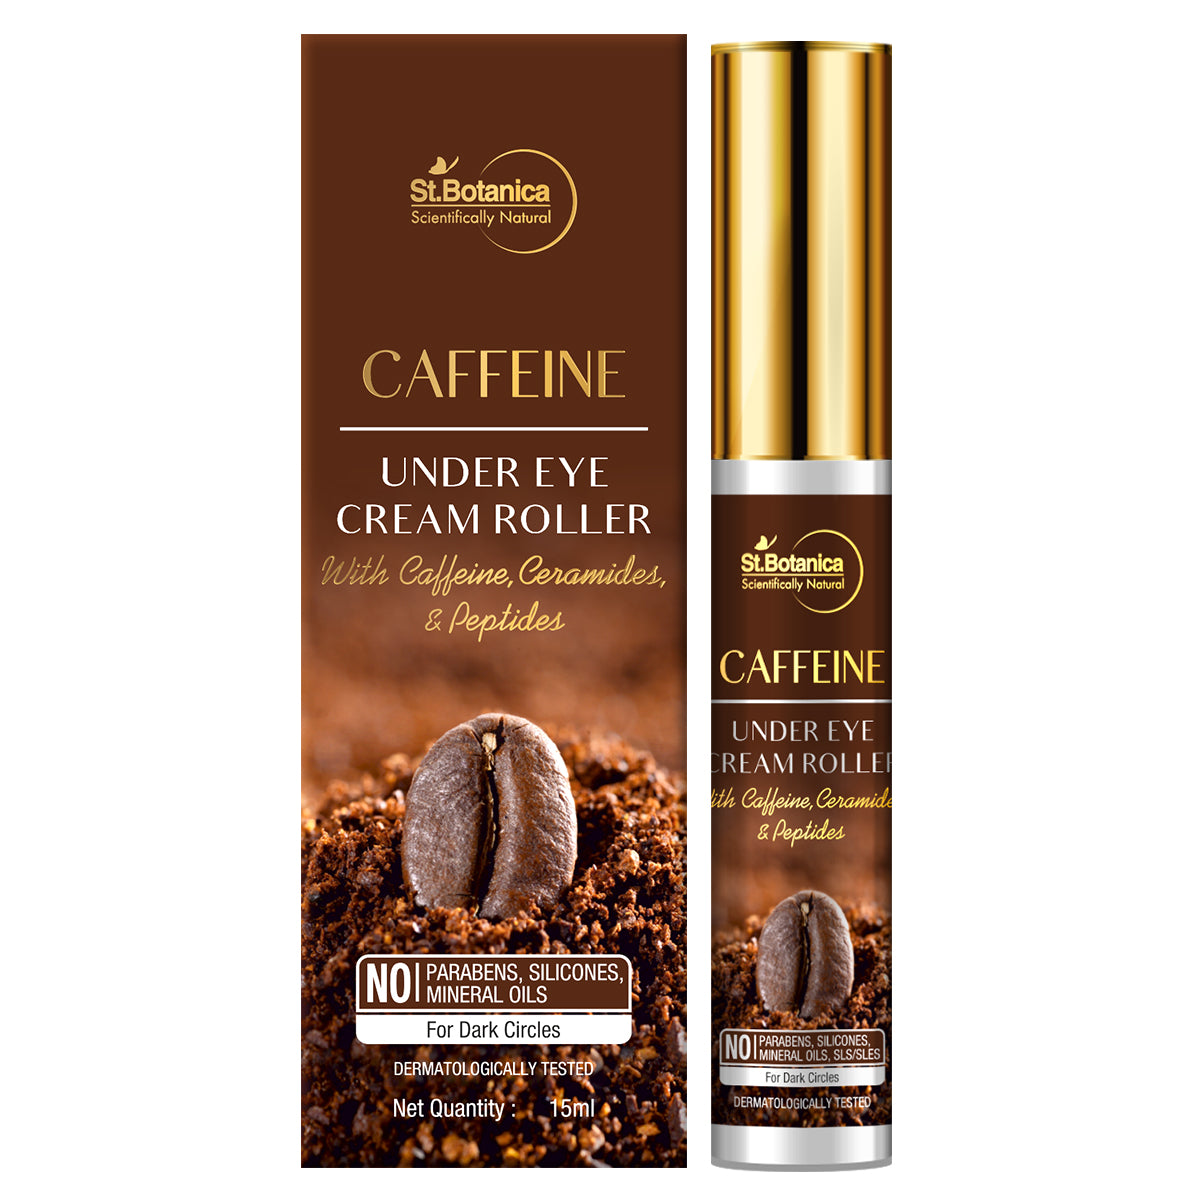 St.Botanica Caffeine 1% Under Eye Cream Roller With Ceramides And Peptides, 15 ml